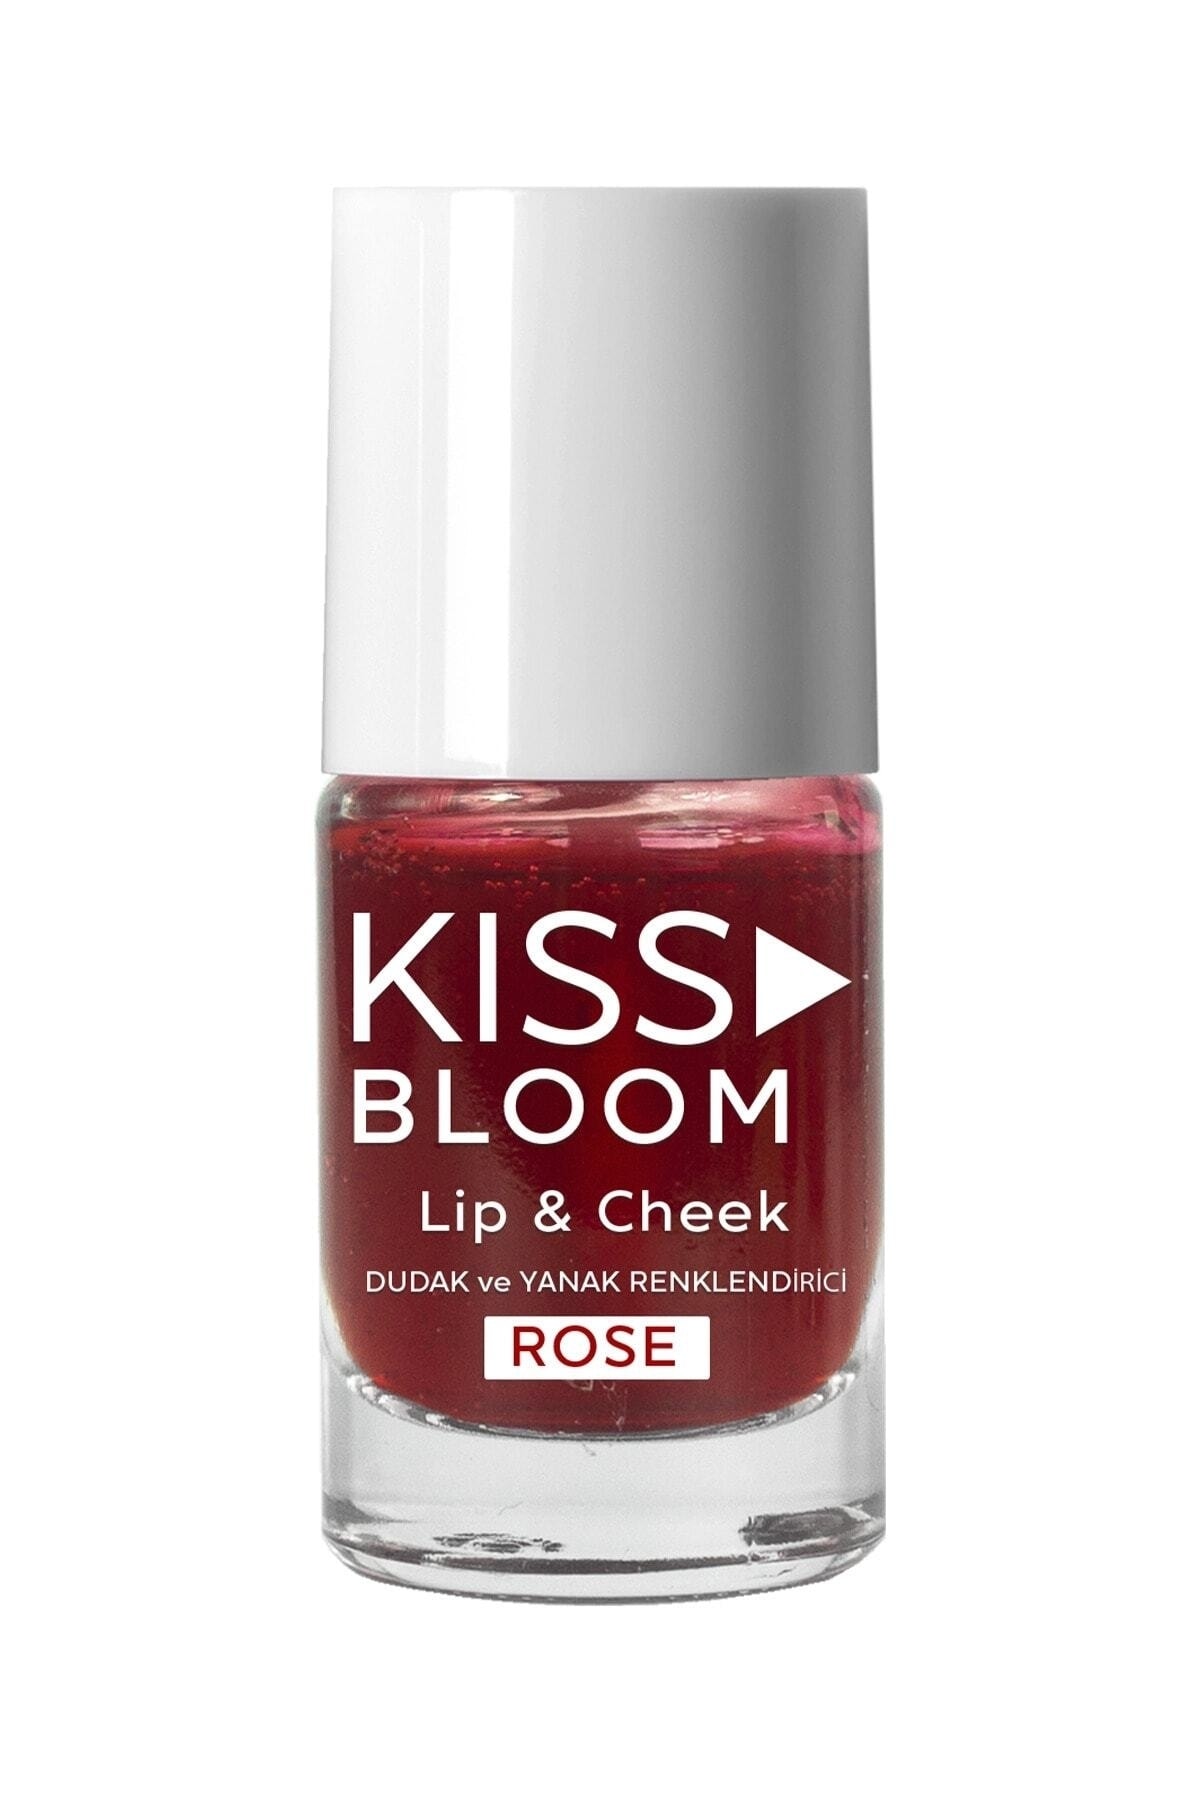 KISS & BLOOM Doğal Görünümlü Dudak Ve Yanak Renklendirici Lip & Cheek Rose 11 Ml